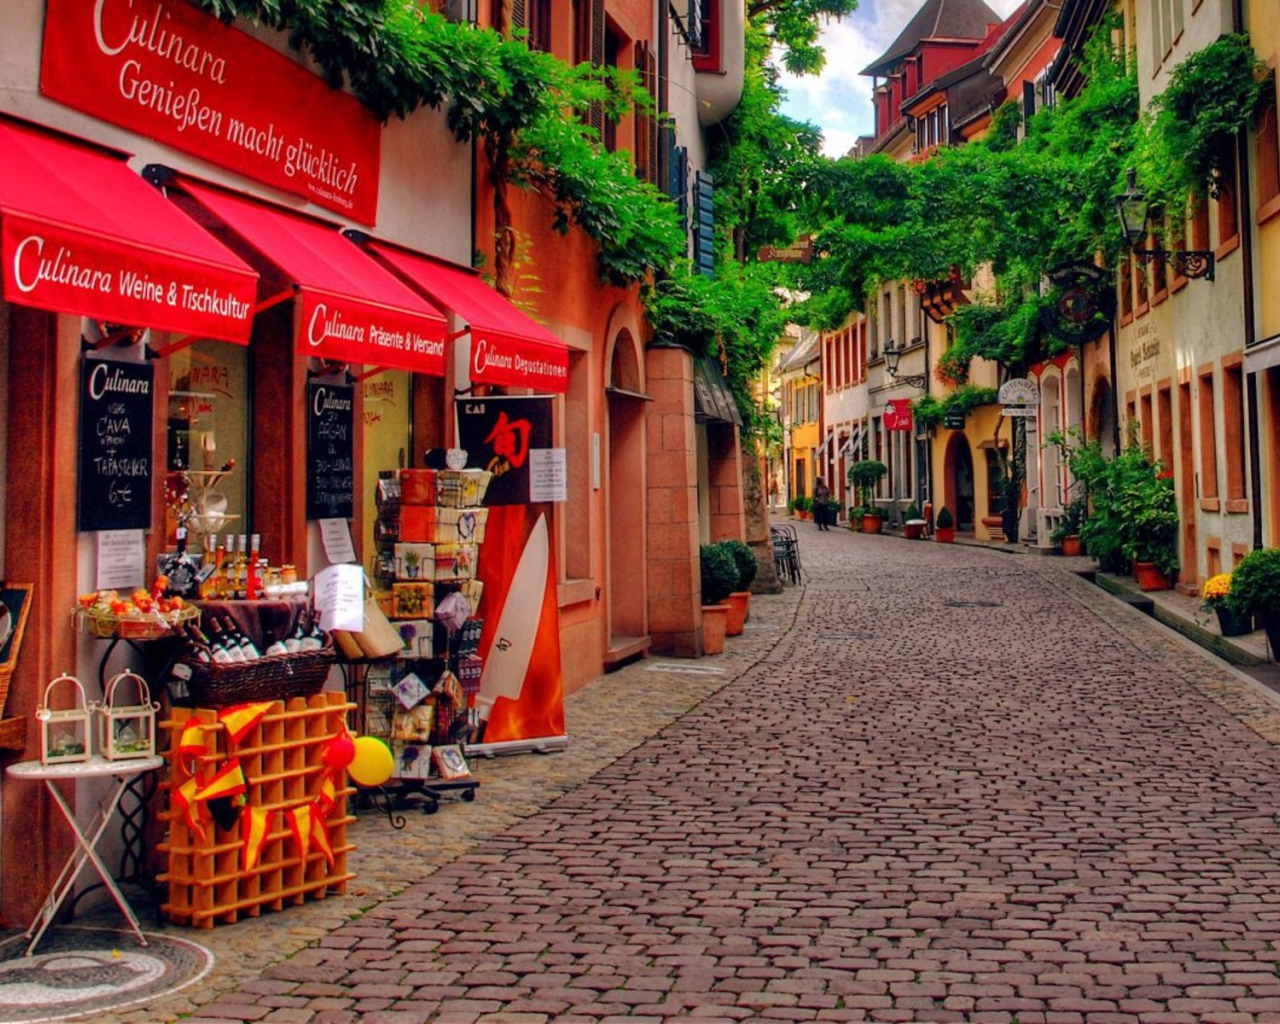 Улица с магазинами в городе в Германии